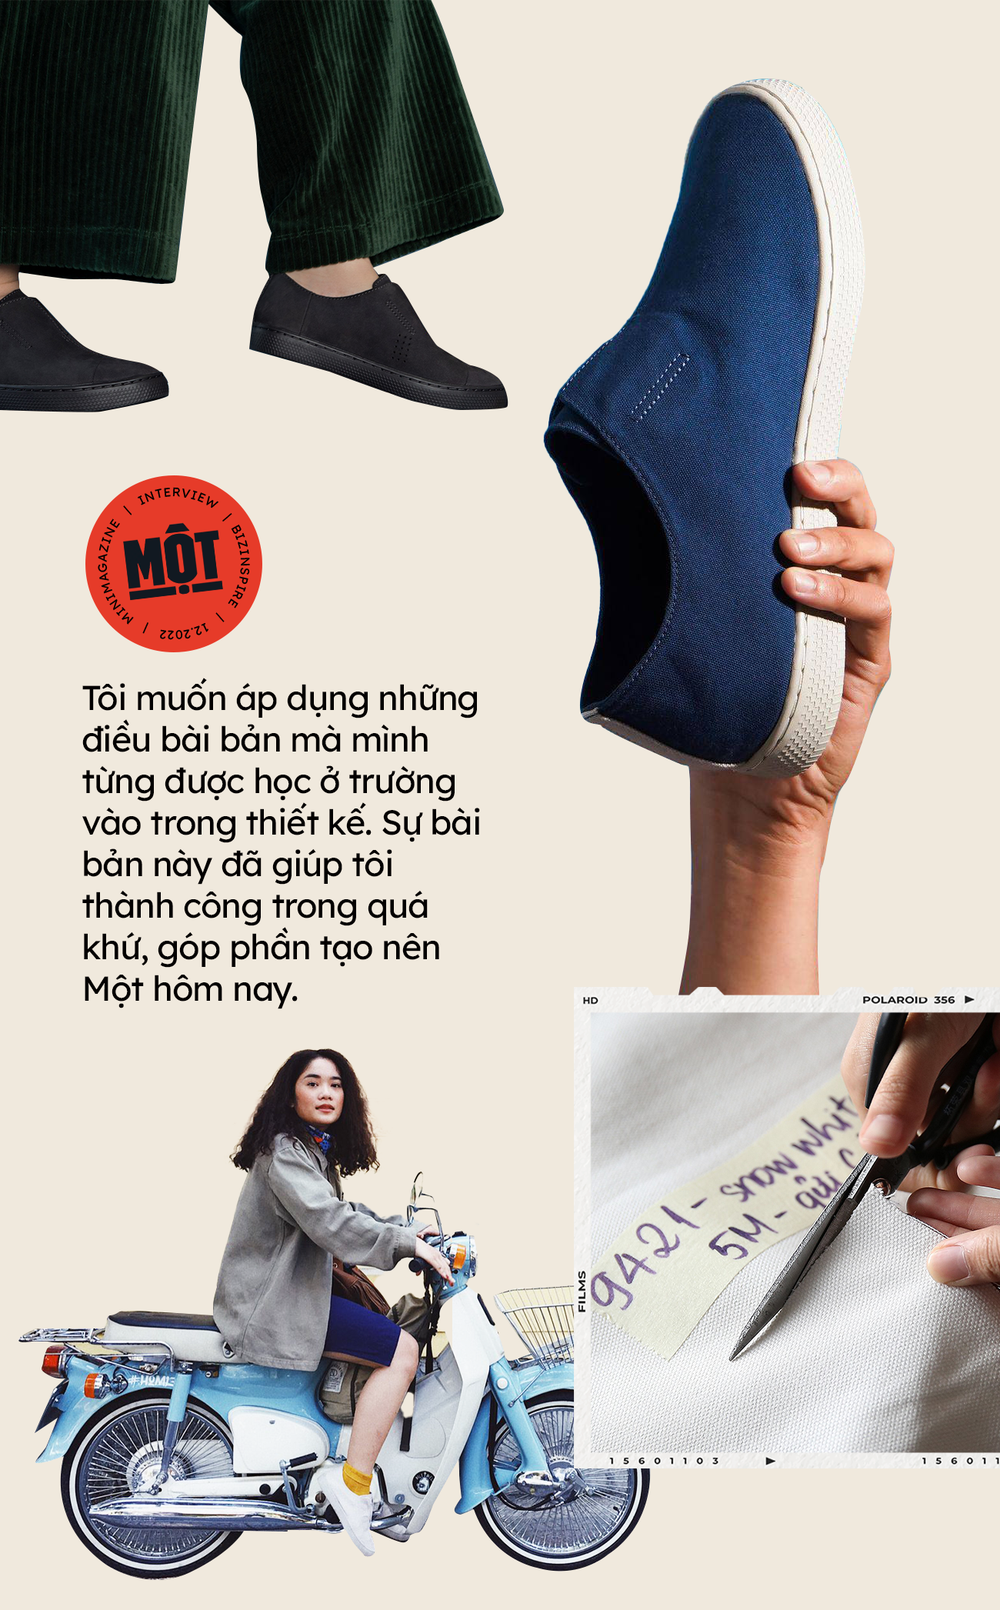 Co-Founder giày Một “made in Việt Nam” kể chuyện 4 năm chỉ sản xuất duy nhất 1 mẫu giày, ai cũng có thể đi vào chân và tuyệt đối không thể sao chép vì… quá khó - Ảnh 7.